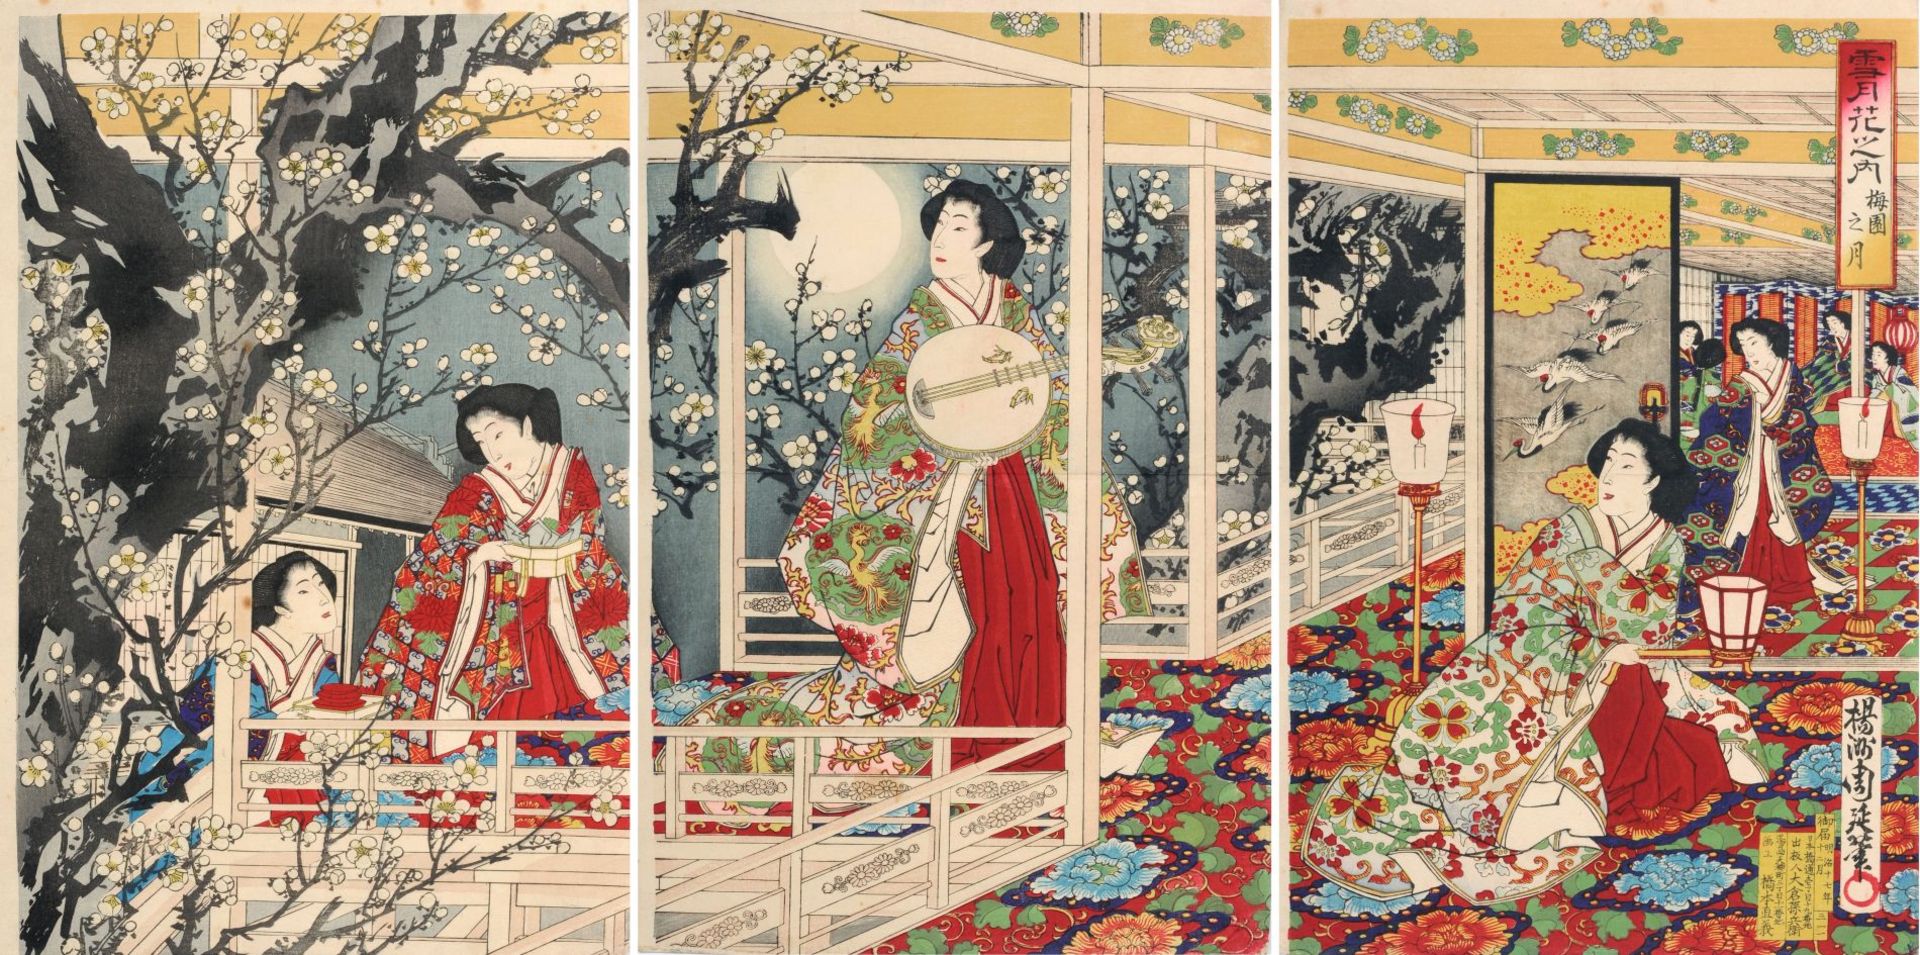 Toyohara Chikanobu "Moon in the Plum Garden". Um 1884.